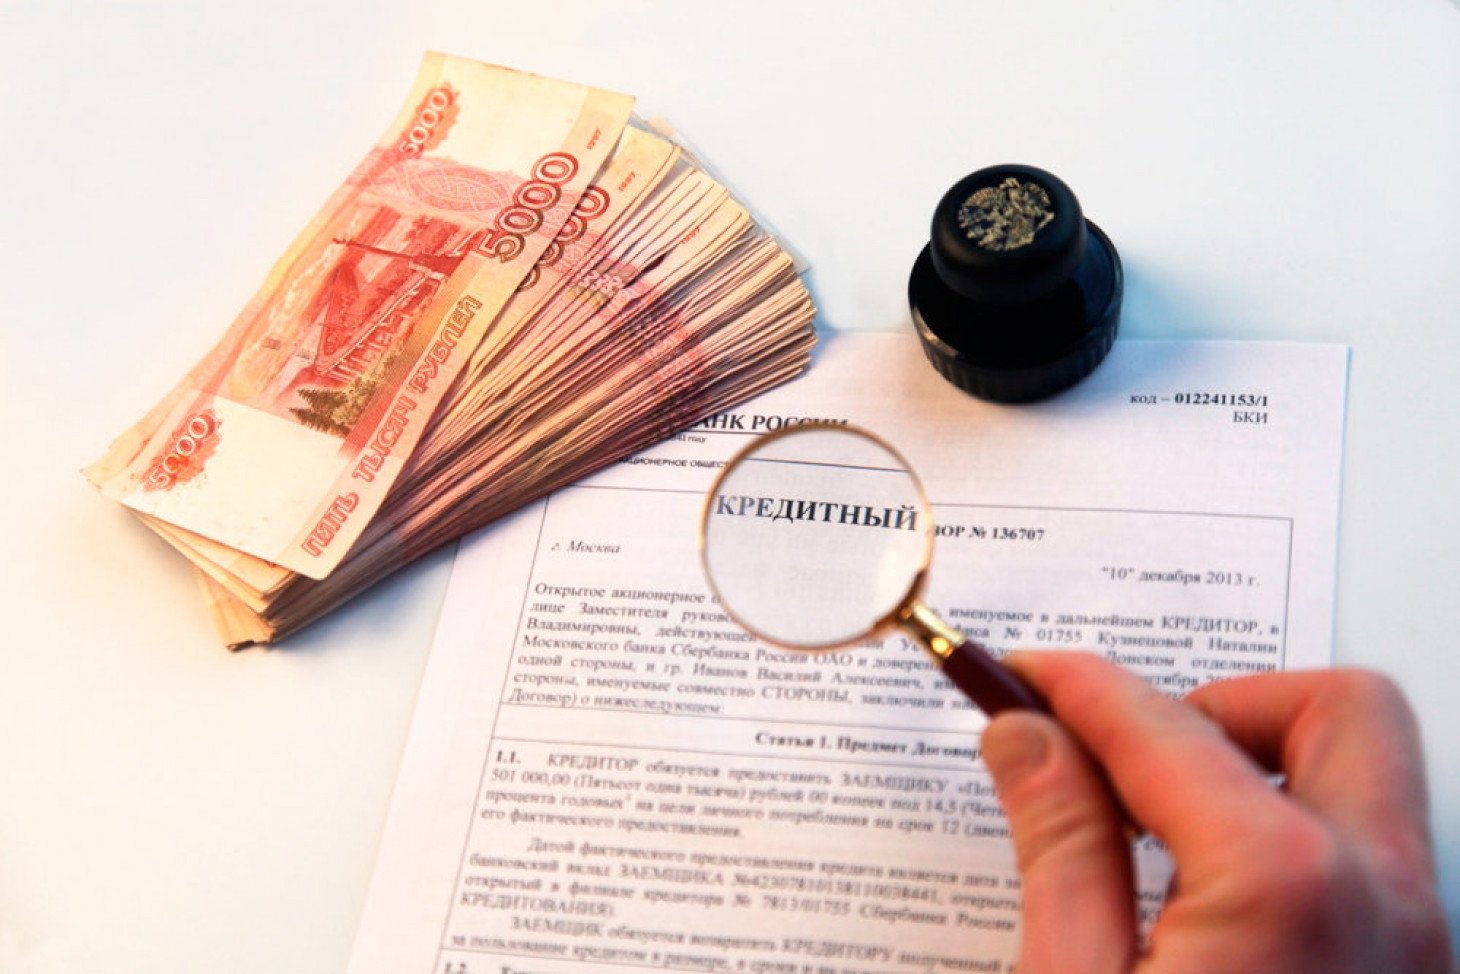 Вологжанину выдали кредит в 1,6 млн рублей по подложным документам